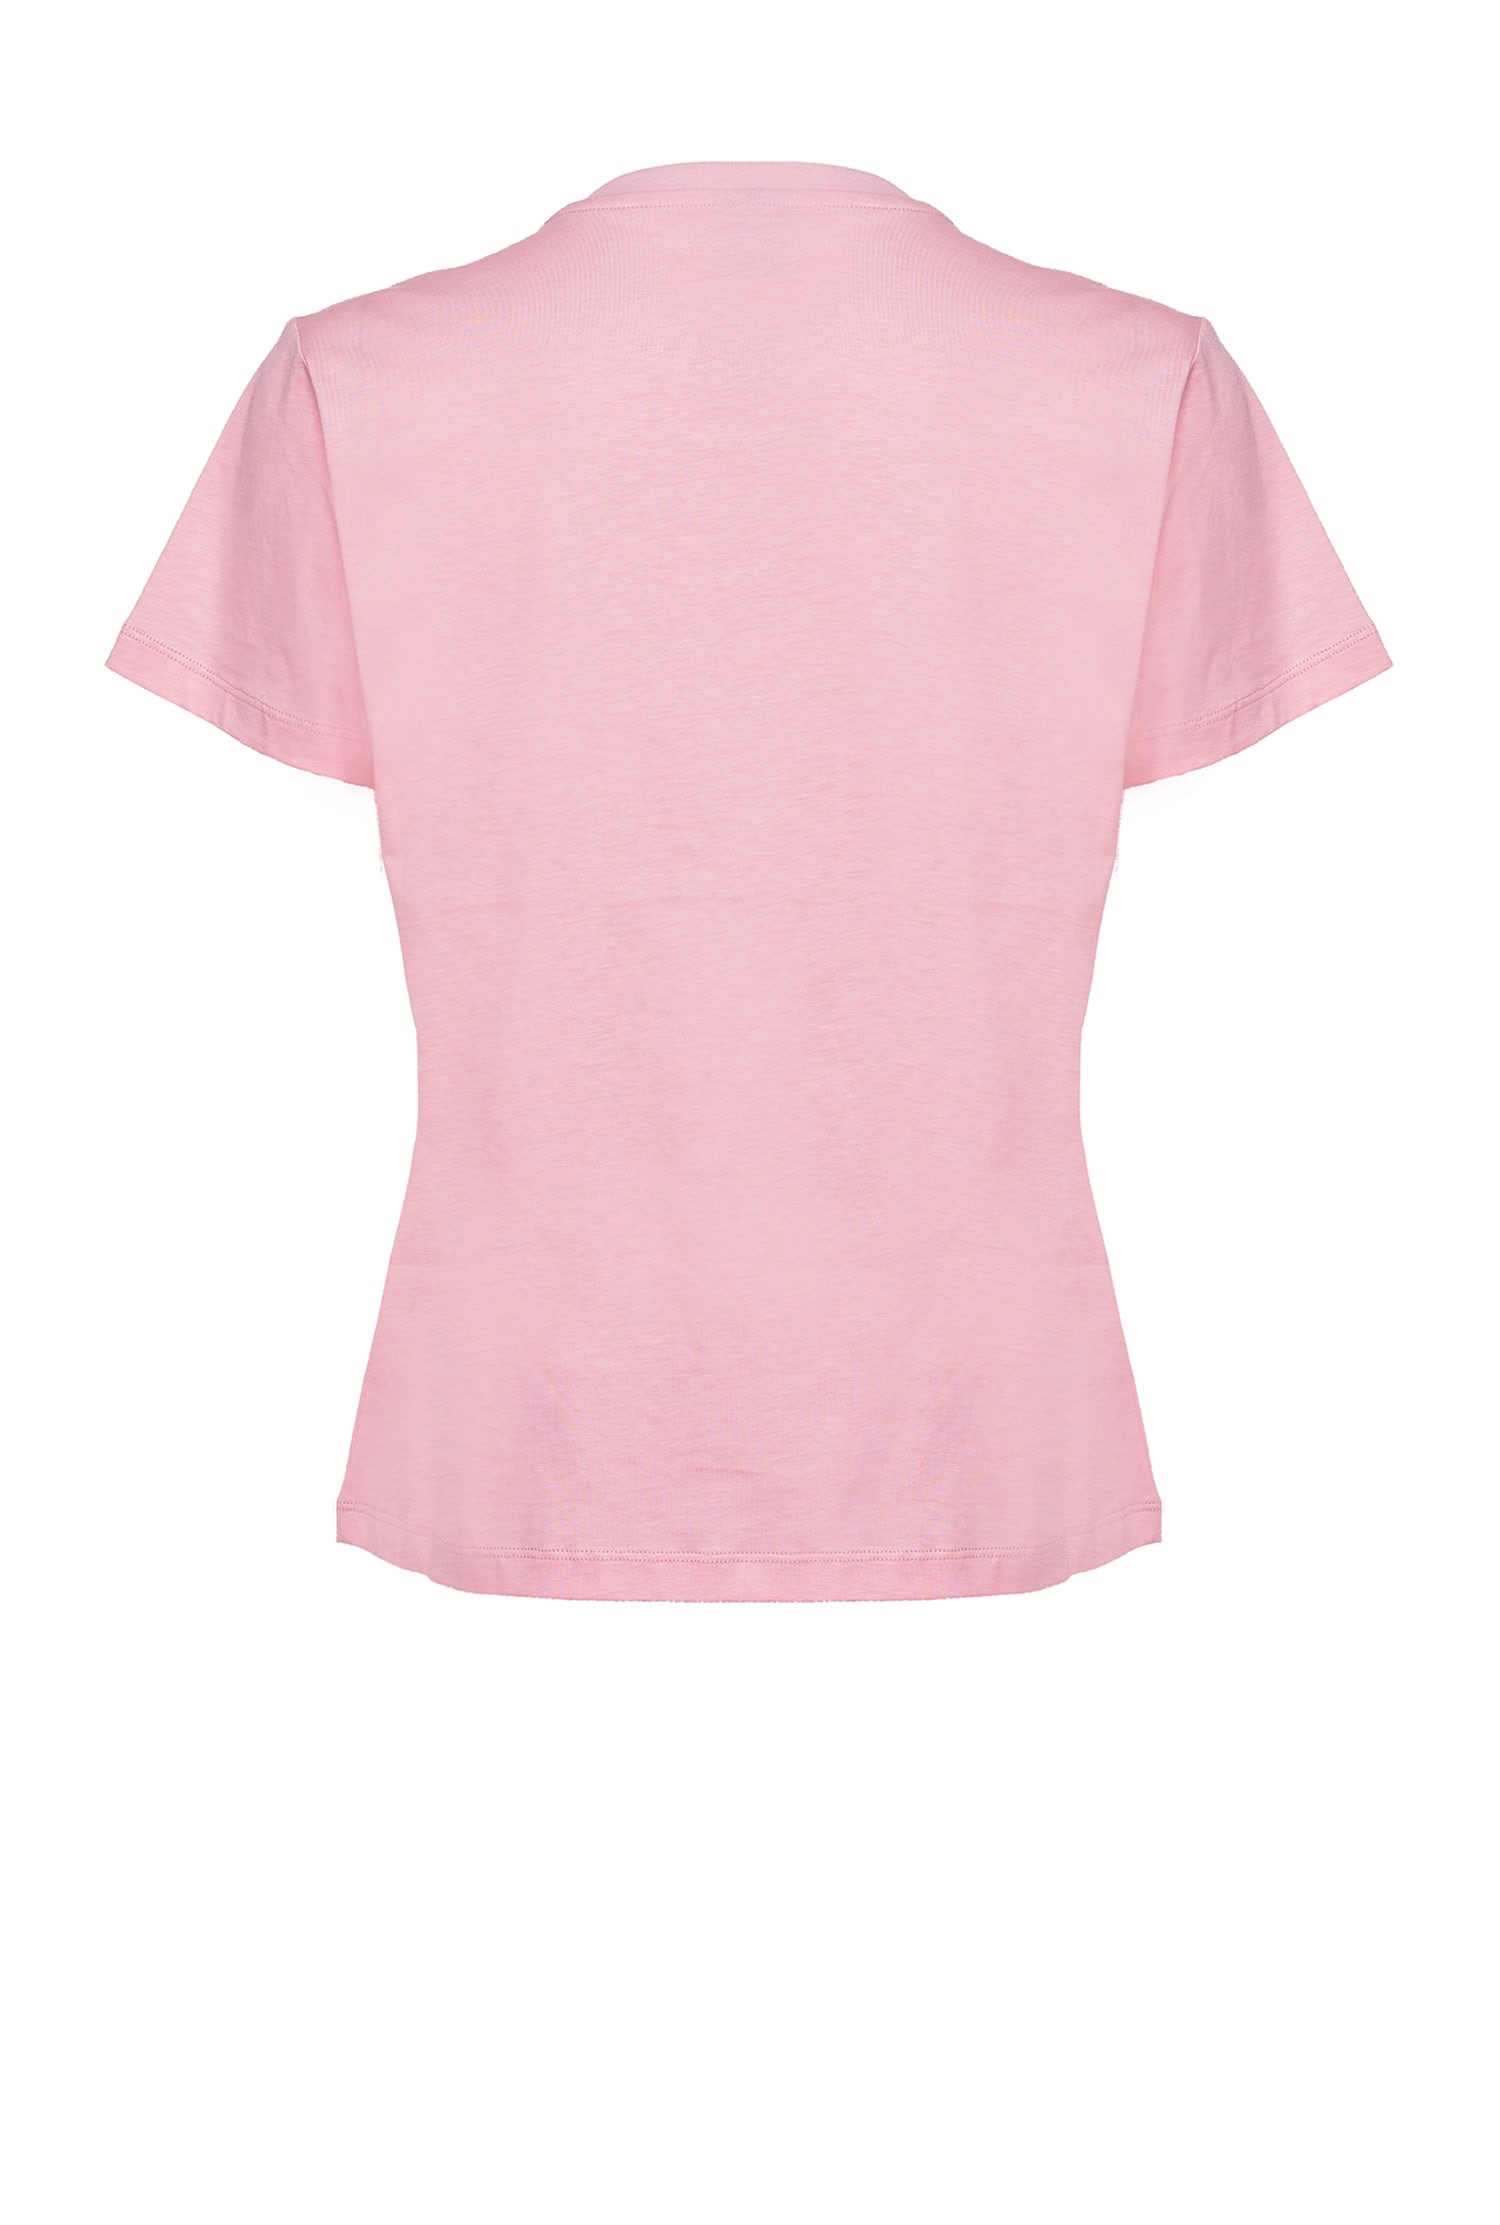 Pinko 女士 Love Birds T恤 XS S M L XL码 

粉色Love Birds T恤，图案刺绣、详情图3